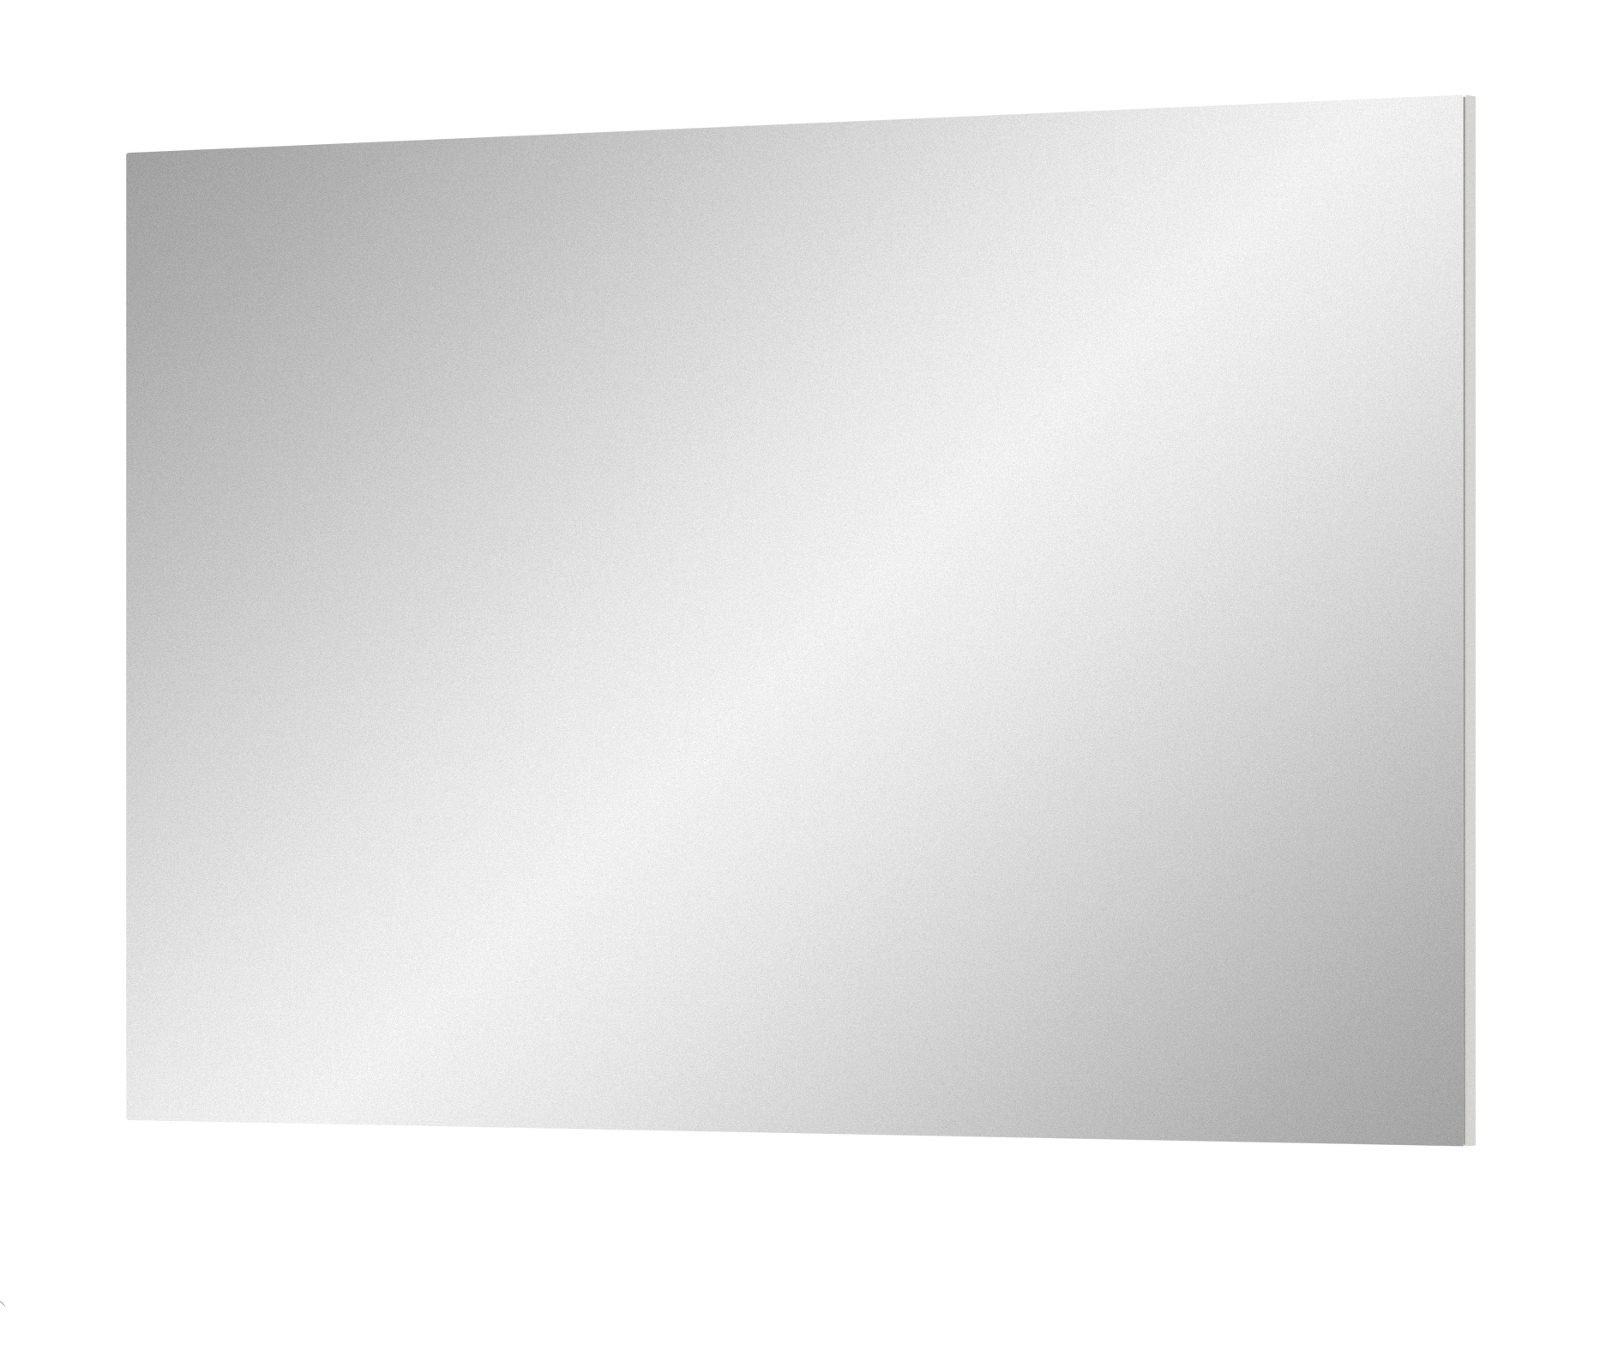 Garderobenspiegel "Prego" in weiß Wandspiegel 109 x 72 cm